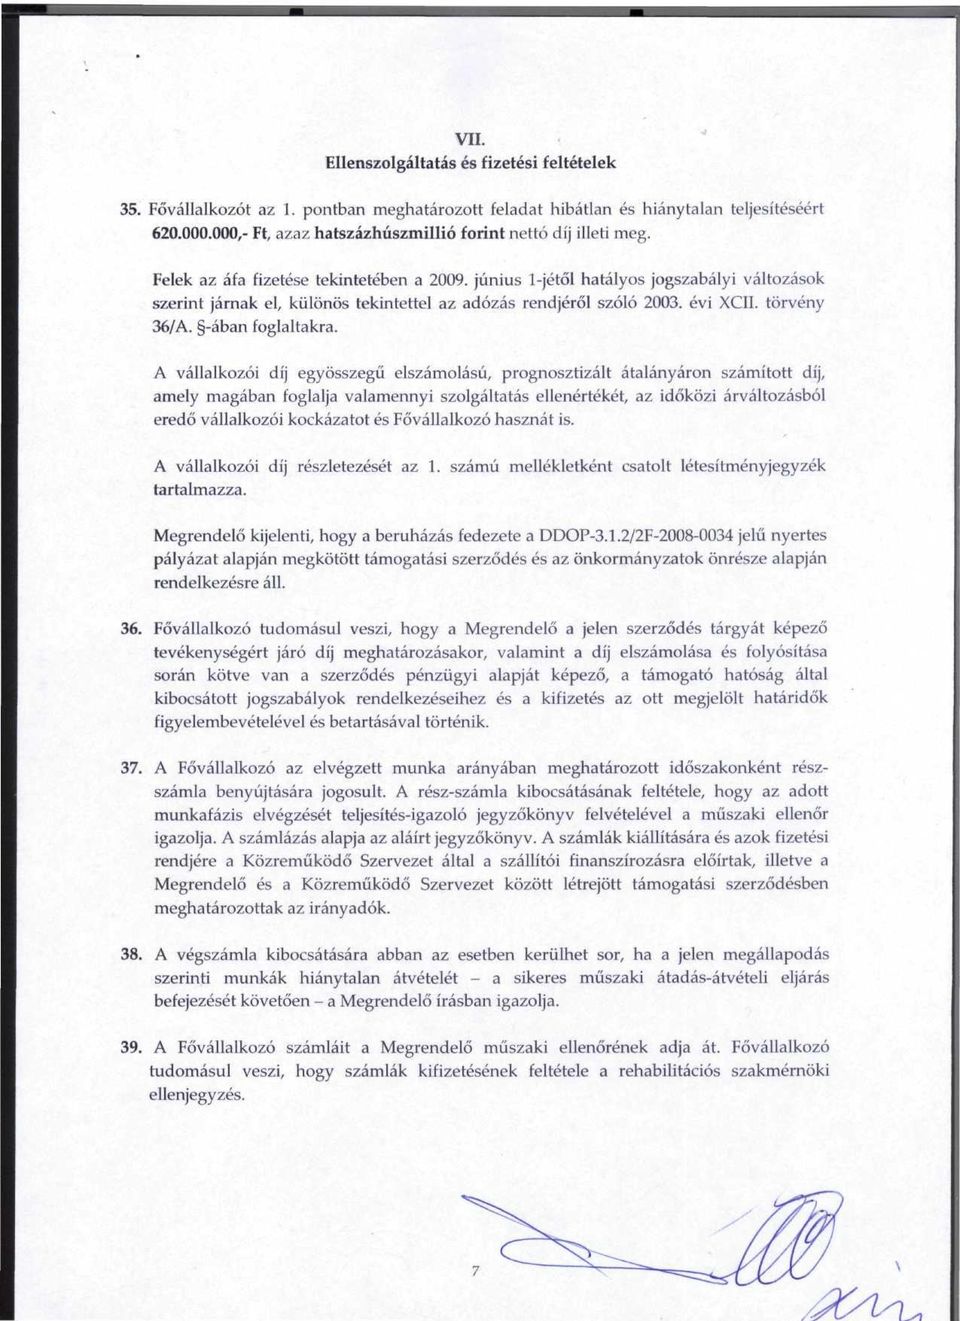 junius 1-jetol hatalyos jogszabalyi valtozasok szerint jarnak el, kiilonos tekintettel az adozas rendjerol szolo 2003. evi XCII. torveny 36/A. -aban foglaltakra.